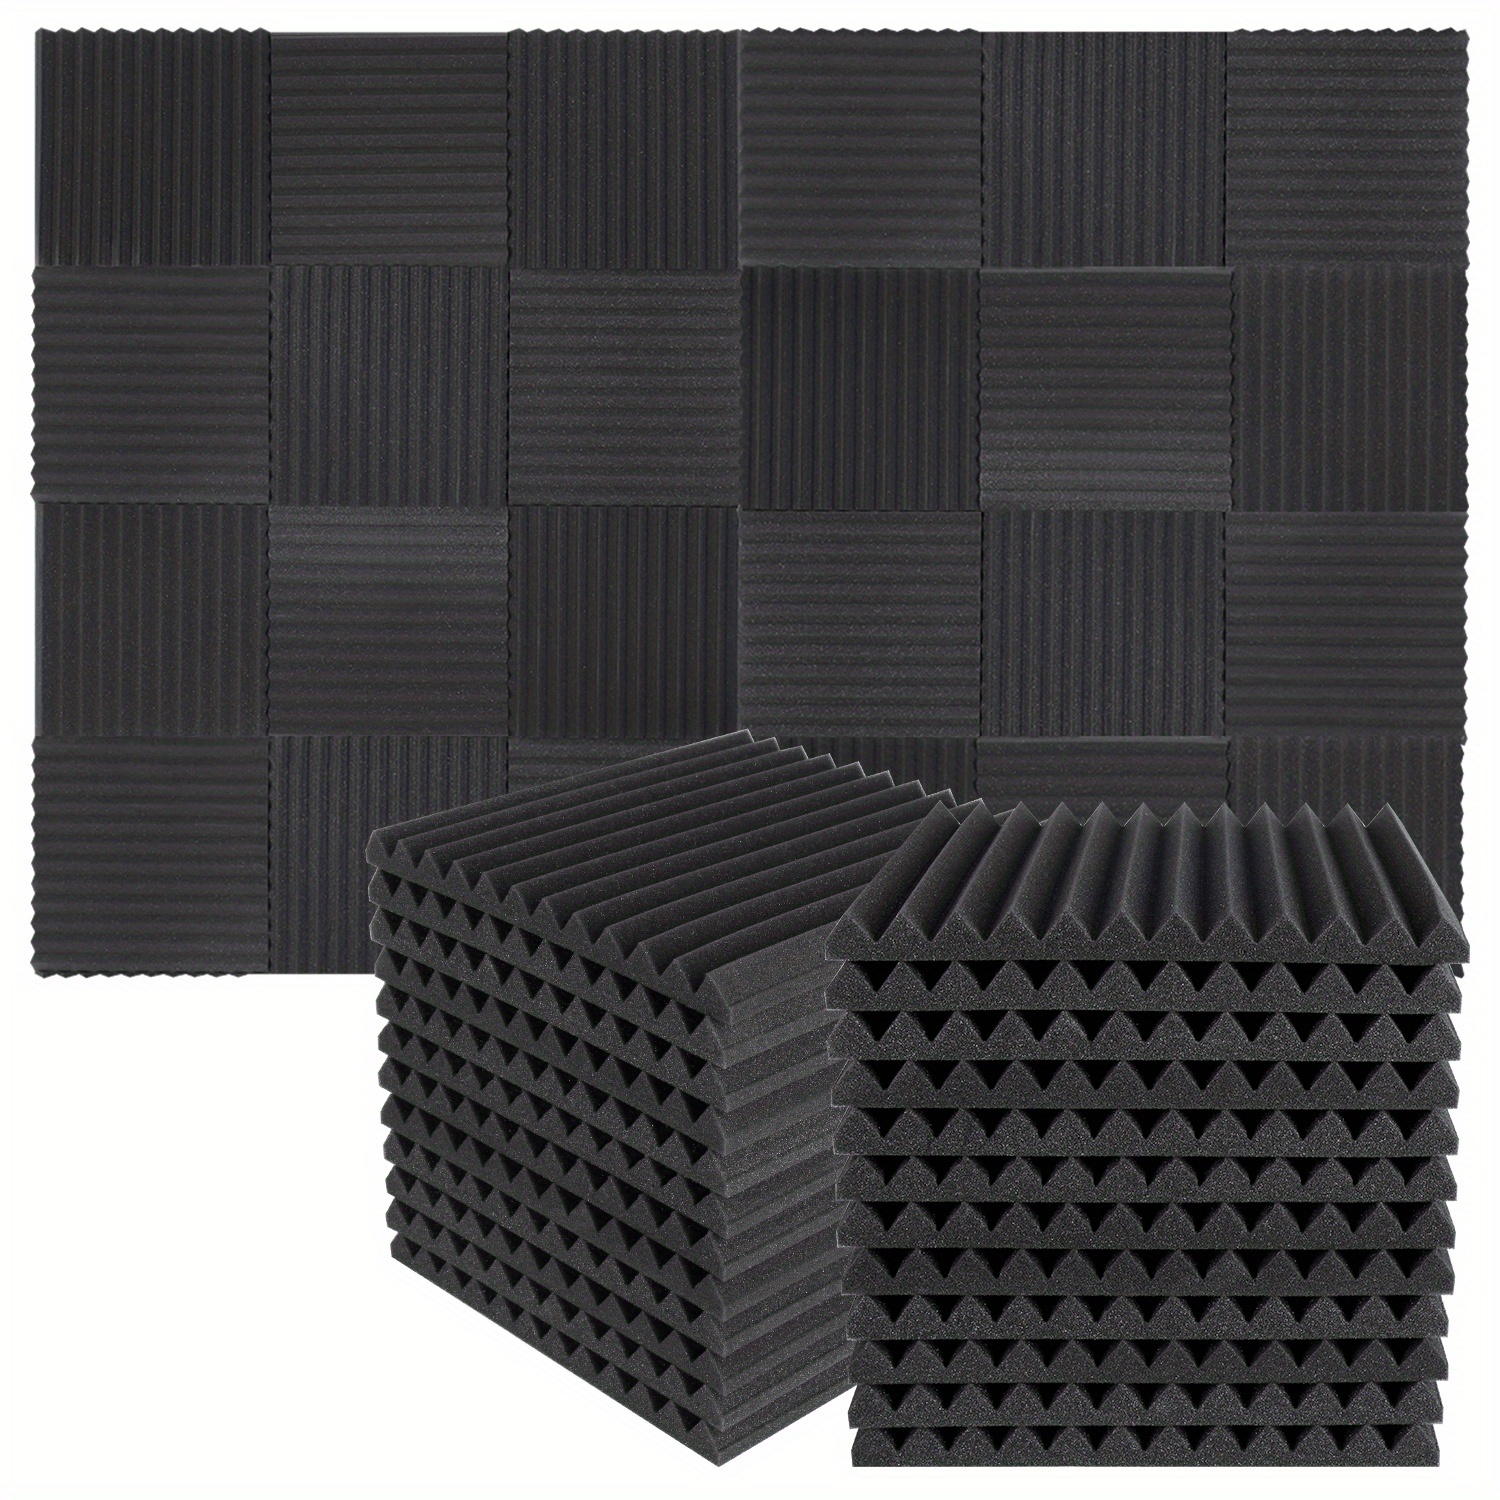  Paquete de 48 paneles acústicos de 12 x 12 x 1 pulgadas,  azulejos de cuña de espuma para insonorización de estudio (24 negros + 24  púrpuras) : Instrumentos Musicales